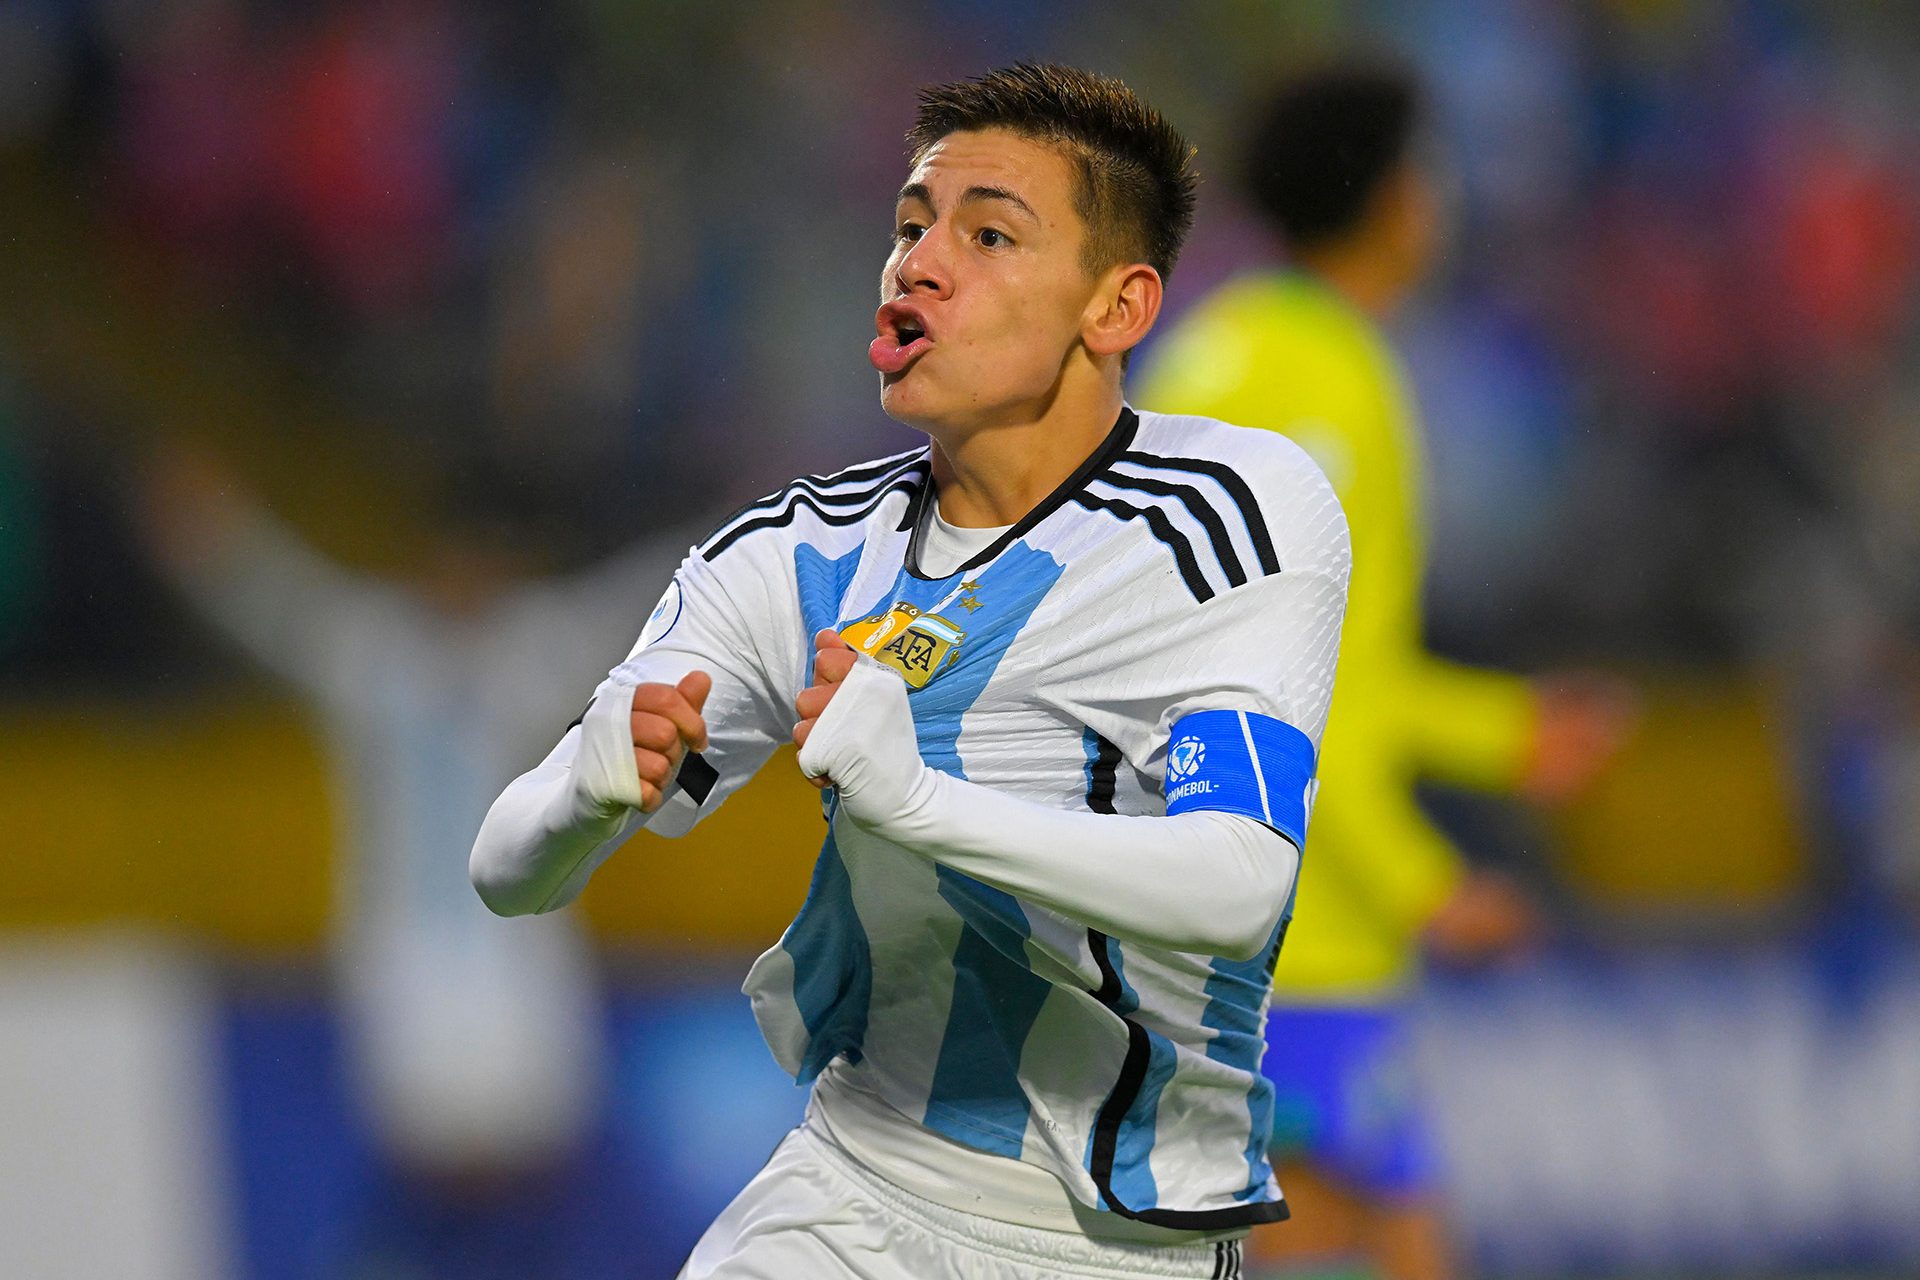 El 'Diablito' Echeverri, la joven promesa argentina que ha atado el Manchester City